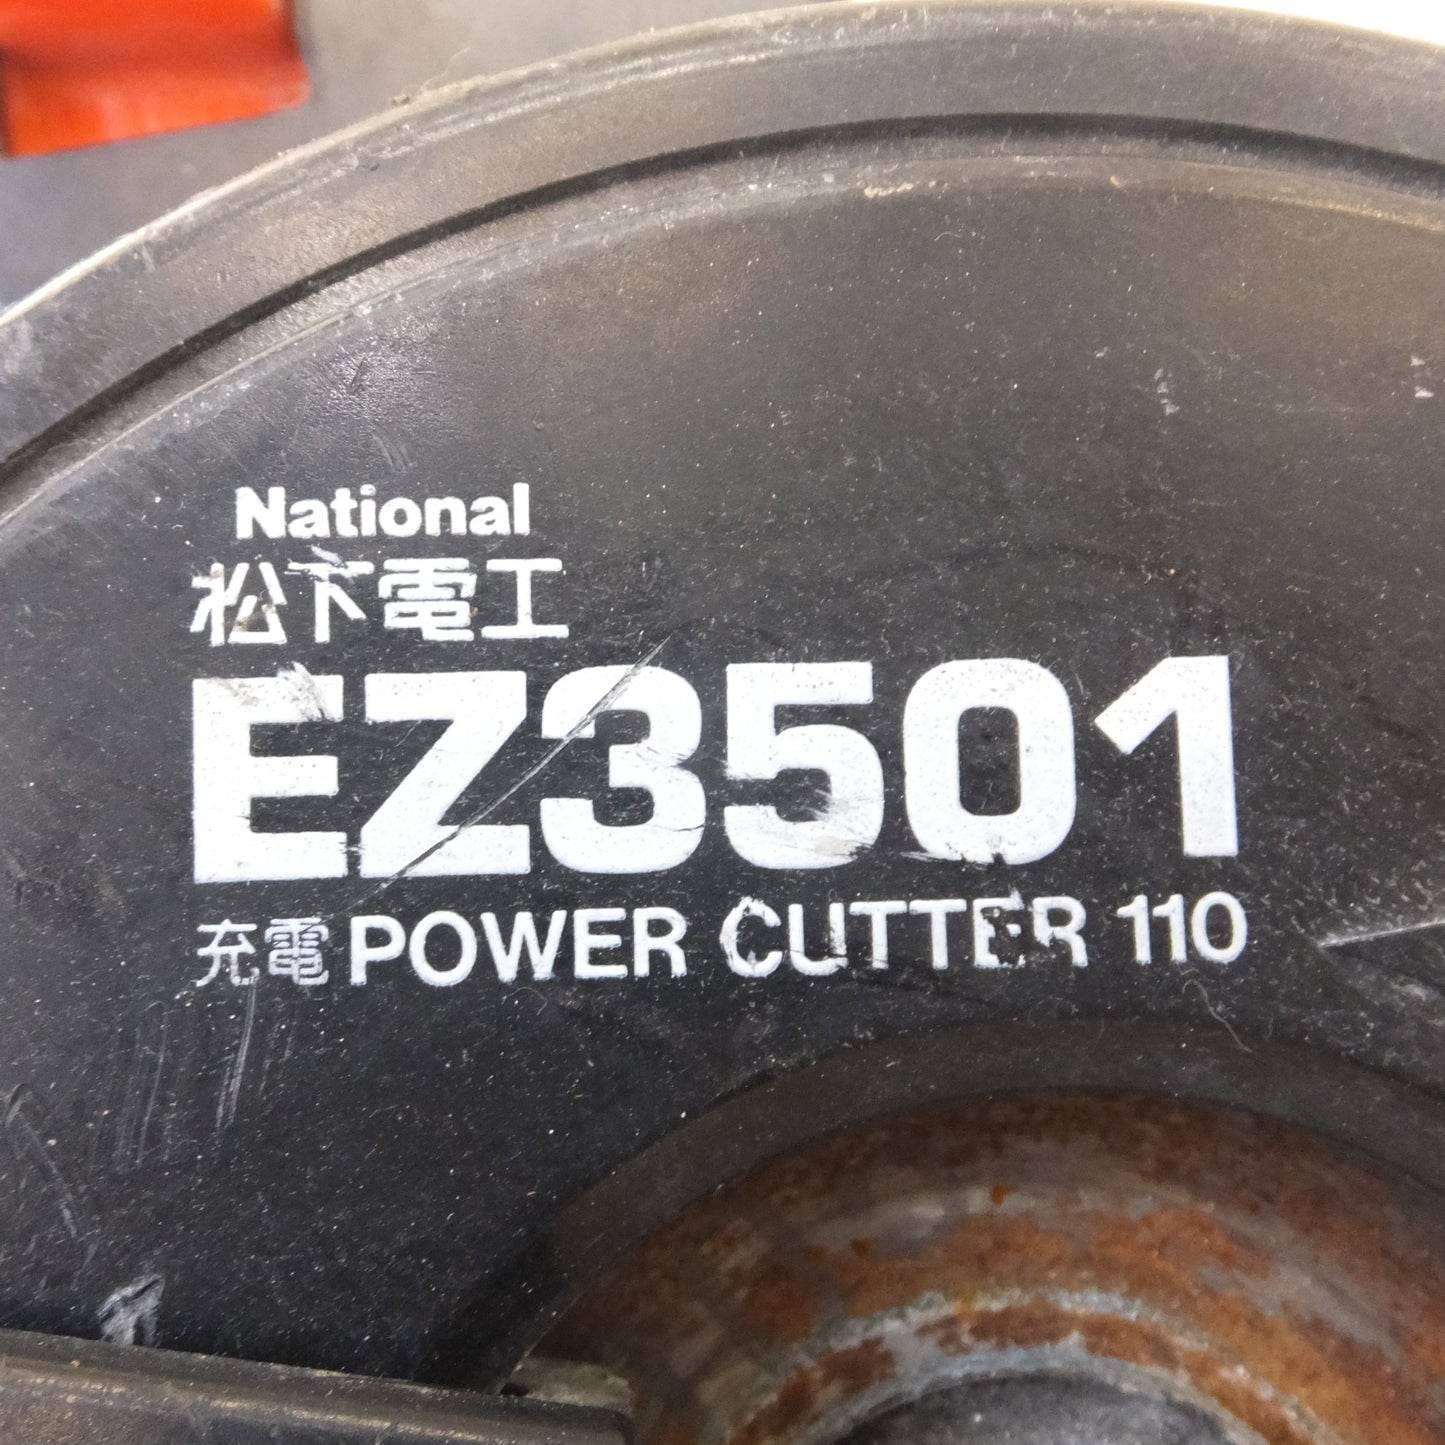 [送料無料] ジャンク★松下 National 充電角穴カッター EZ3571 充電ハンマードリル EZ6811 全ネジカッター EZ3560 充電パワーカッター EZ3501 セット★